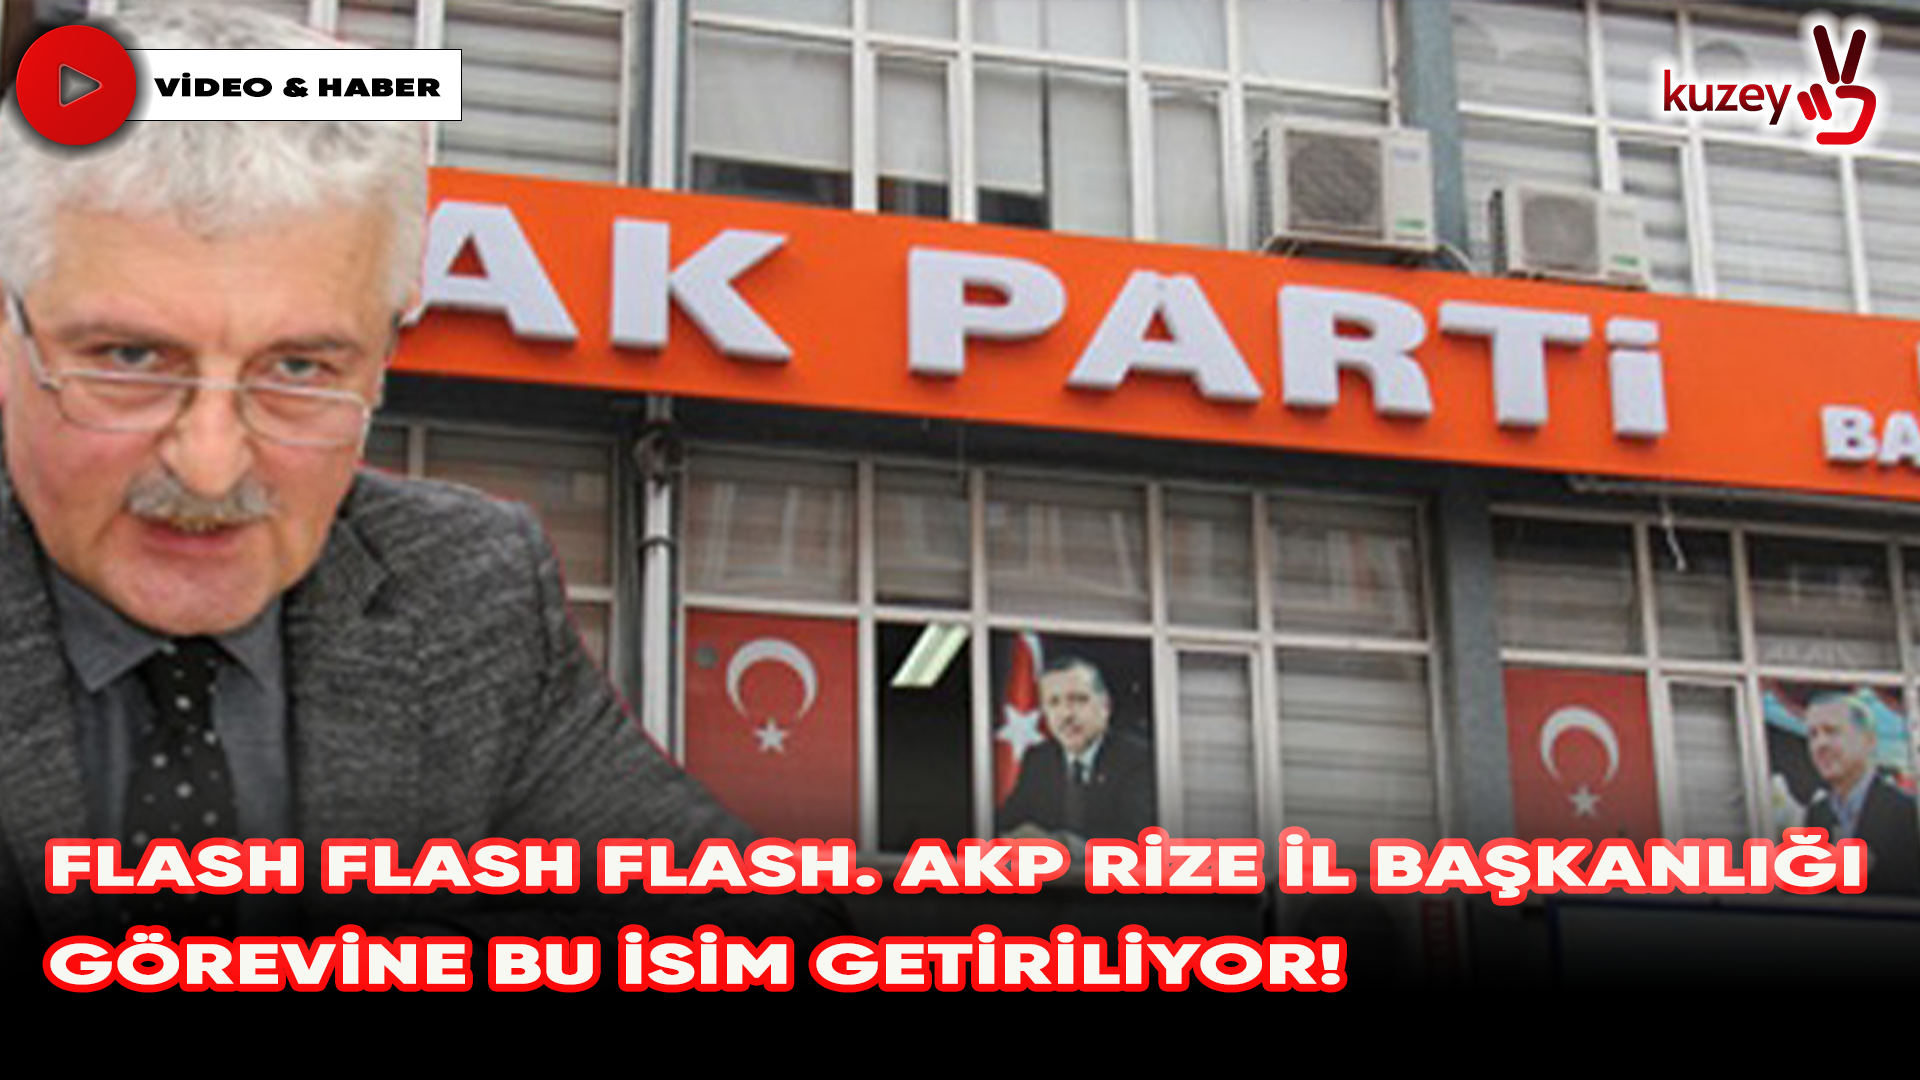 Flash Flash Flash. AKP Rize il başkanlığı görevine bu isim getiriliyor!